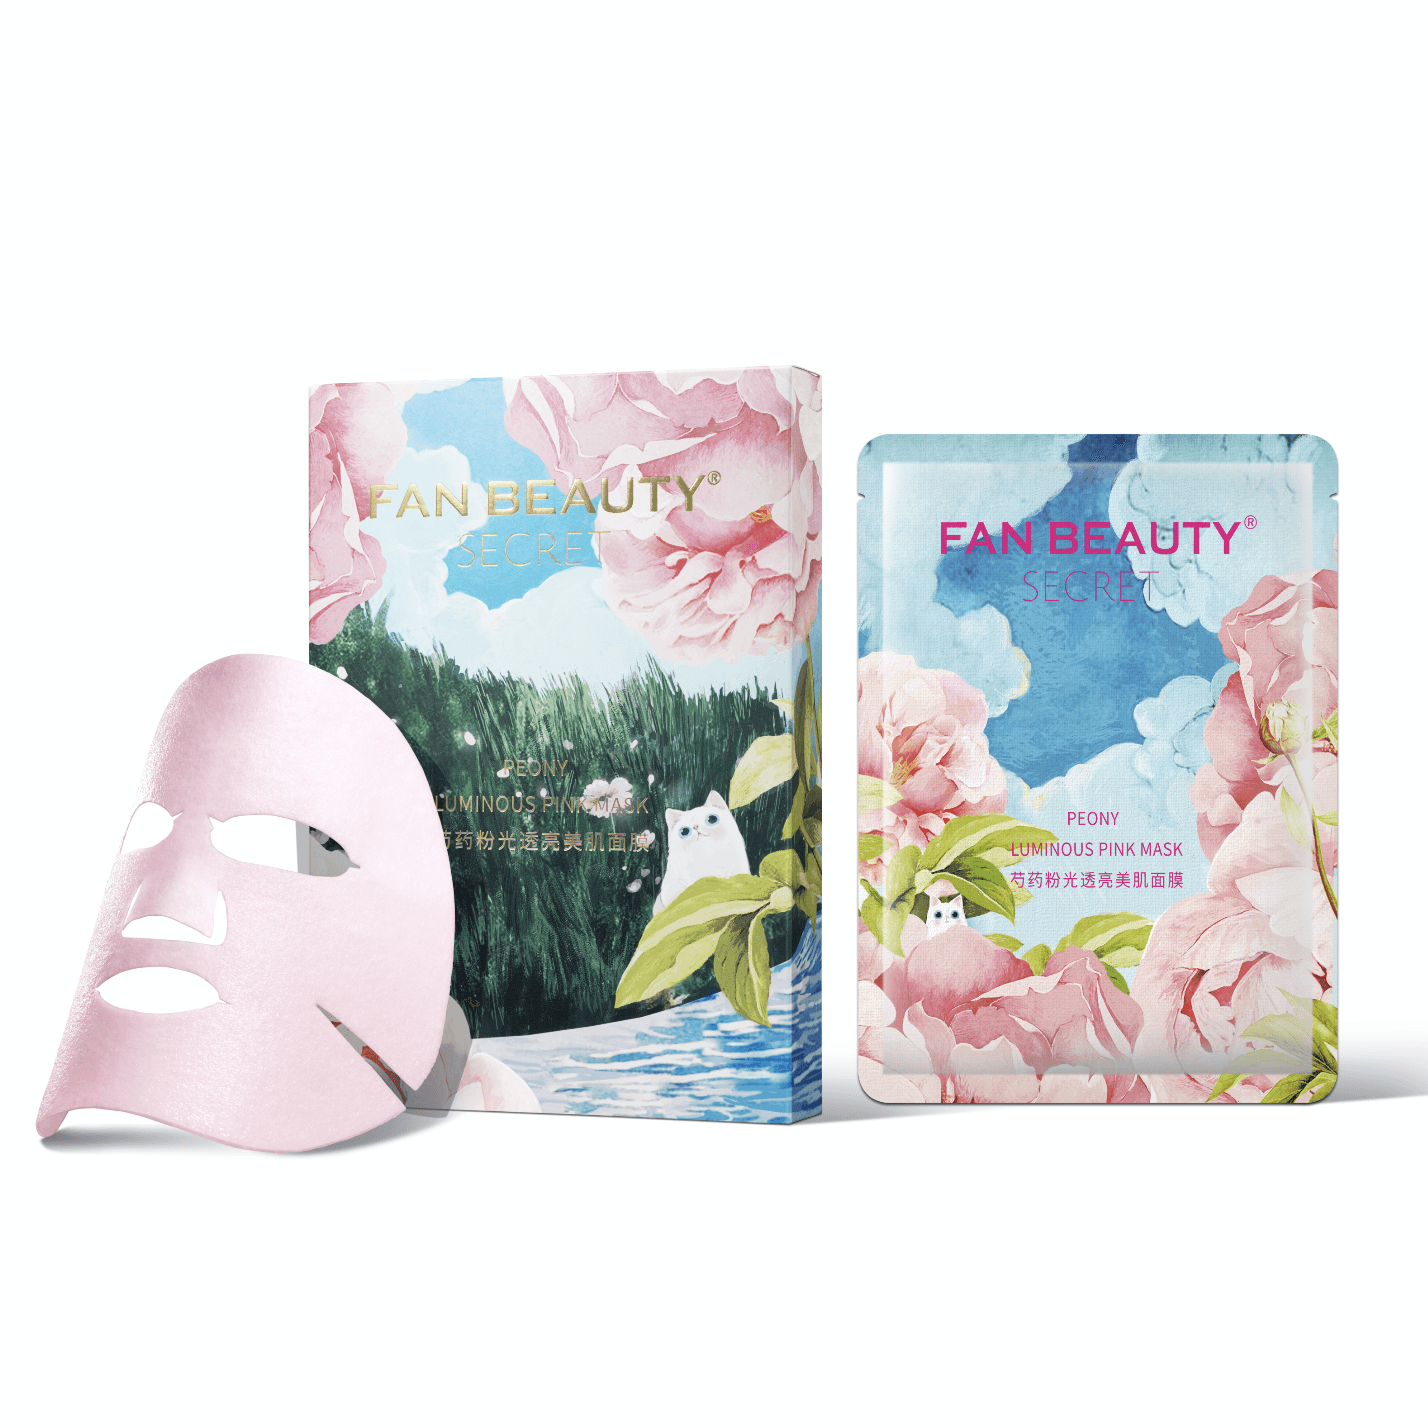 中国fanbeautysecret范冰冰自创品牌芍药粉光美肌面膜补水单盒5片装